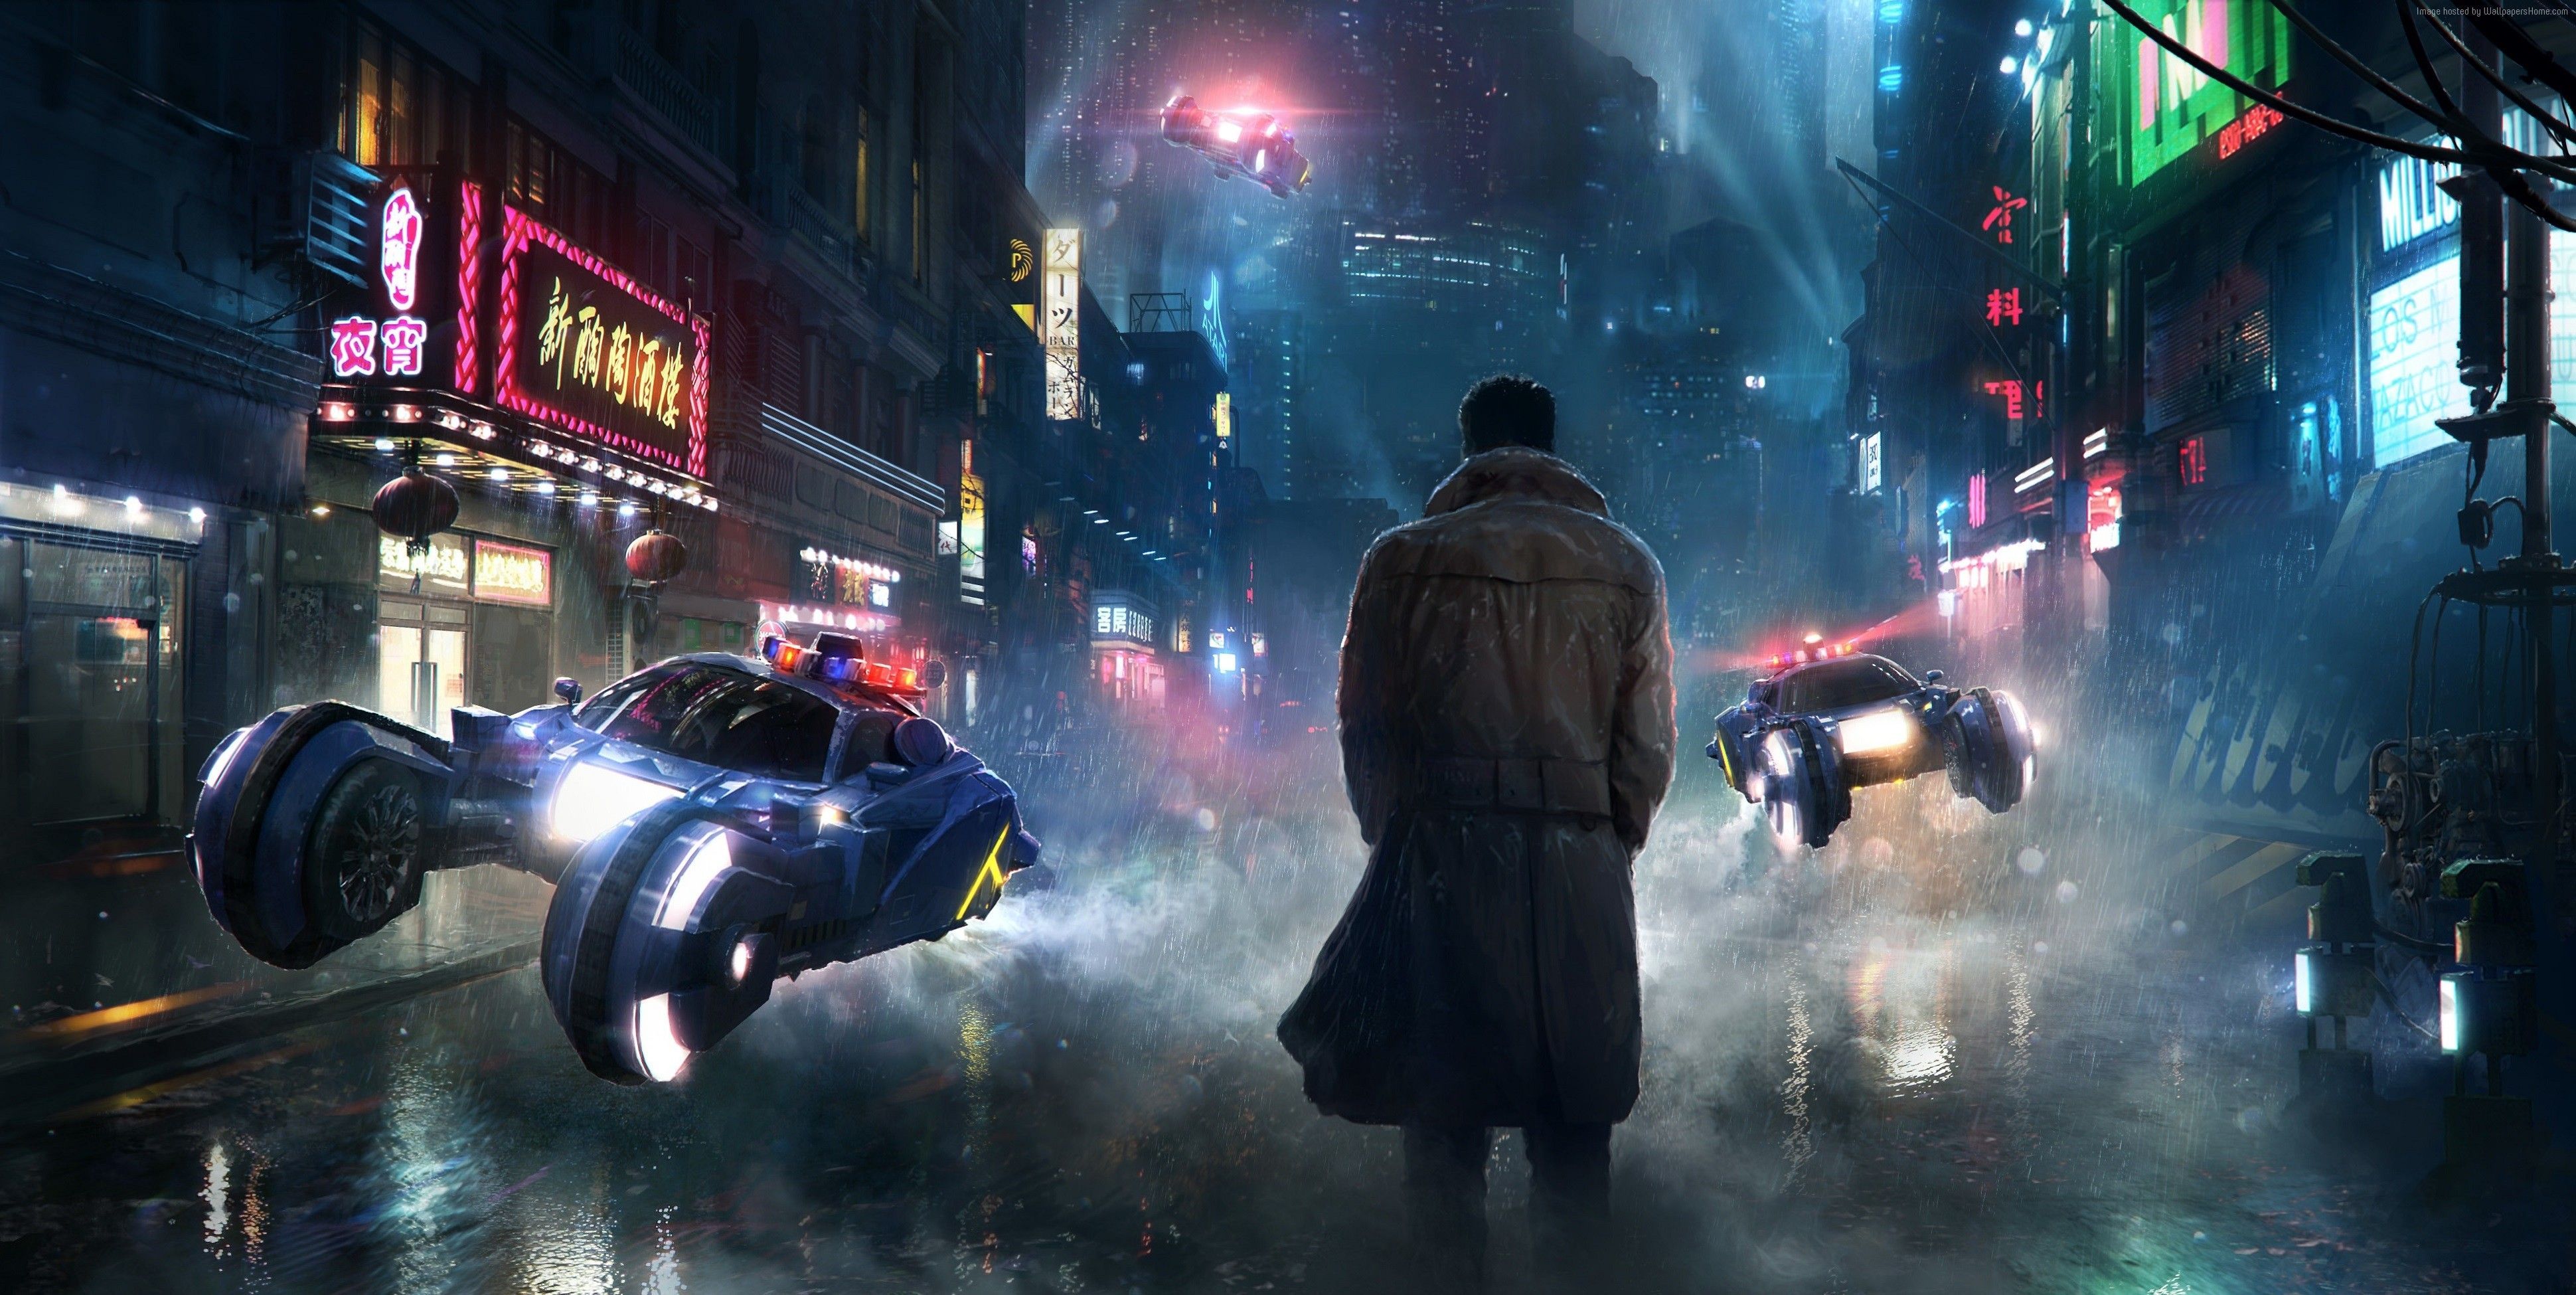 Blade Runner Wallpaper Free Blade Runner Background